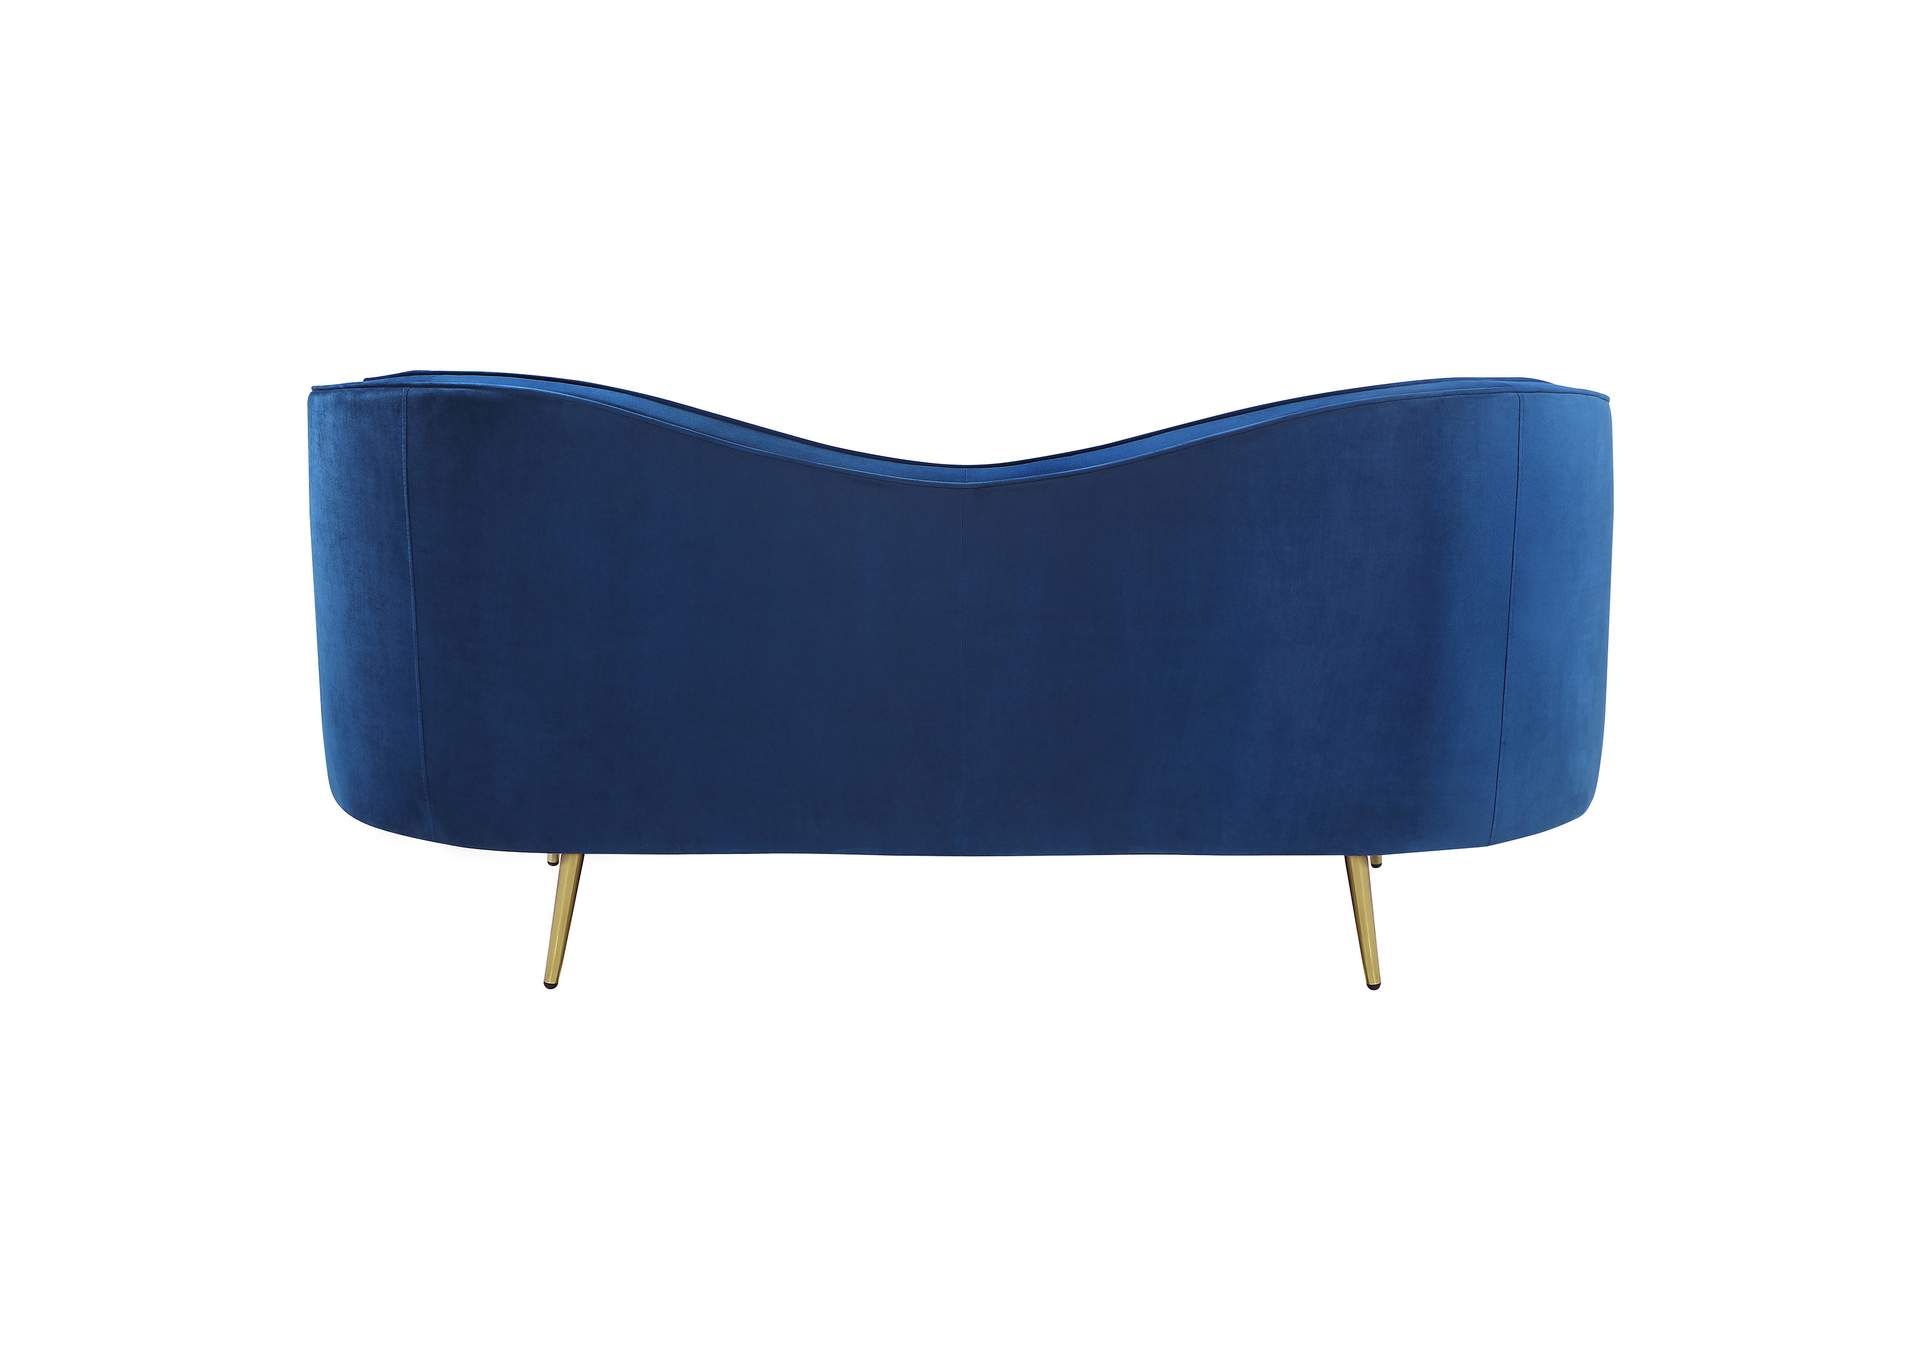 Sophia Upholstered Camel Back Loveseat Blue,Coaster Furniture